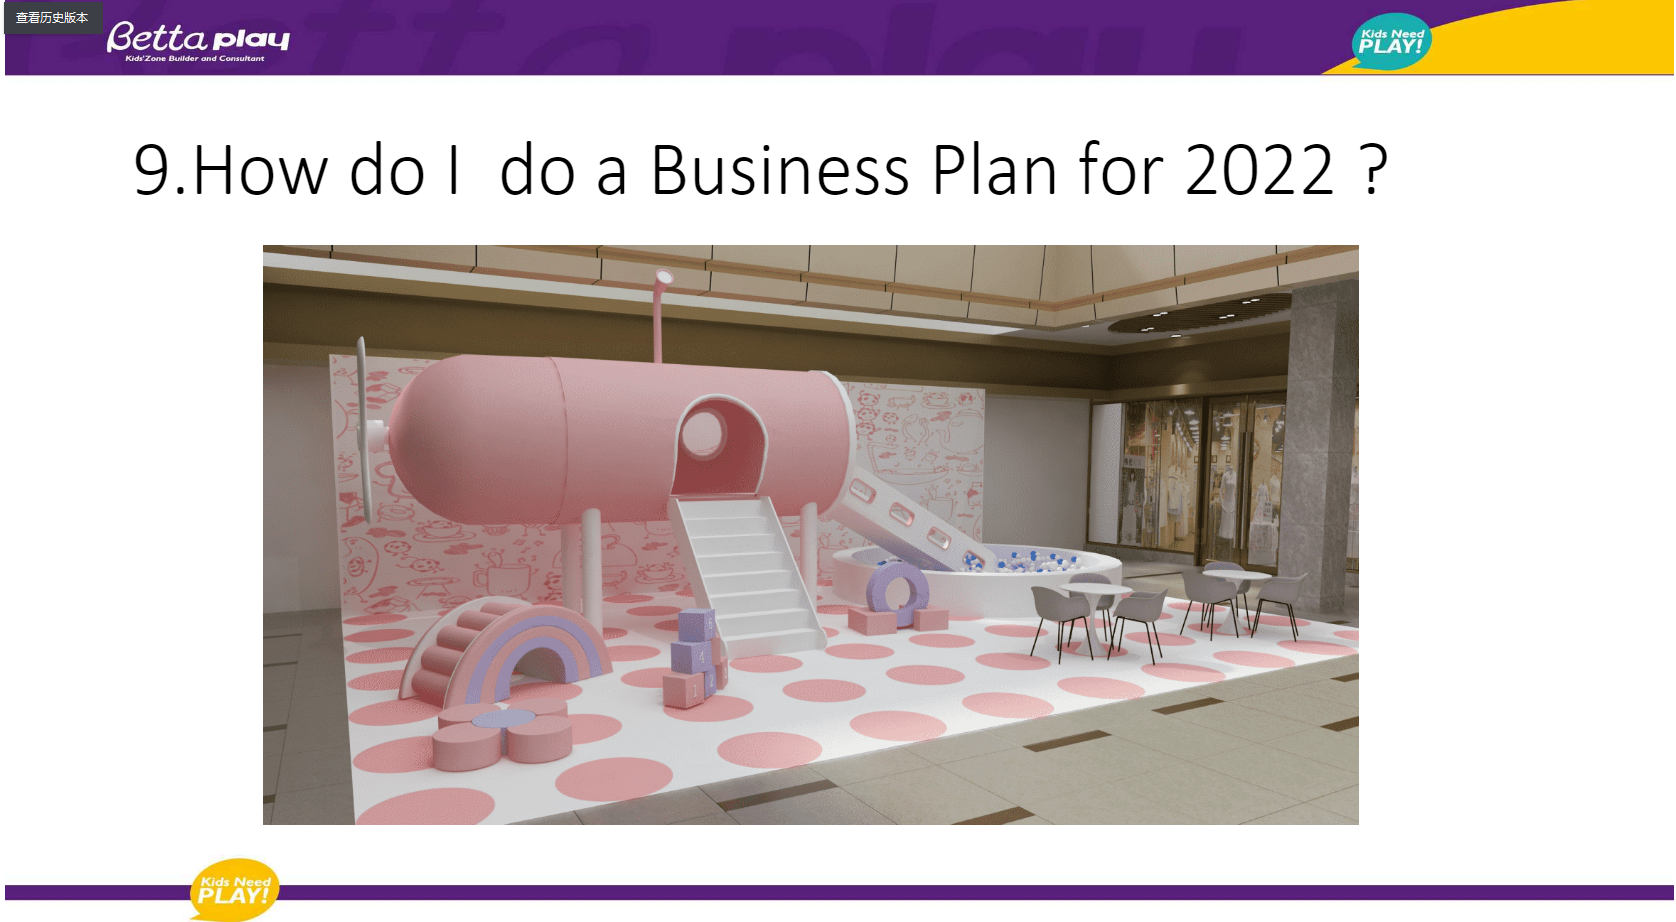 How do I do a Business Plan for 2022 